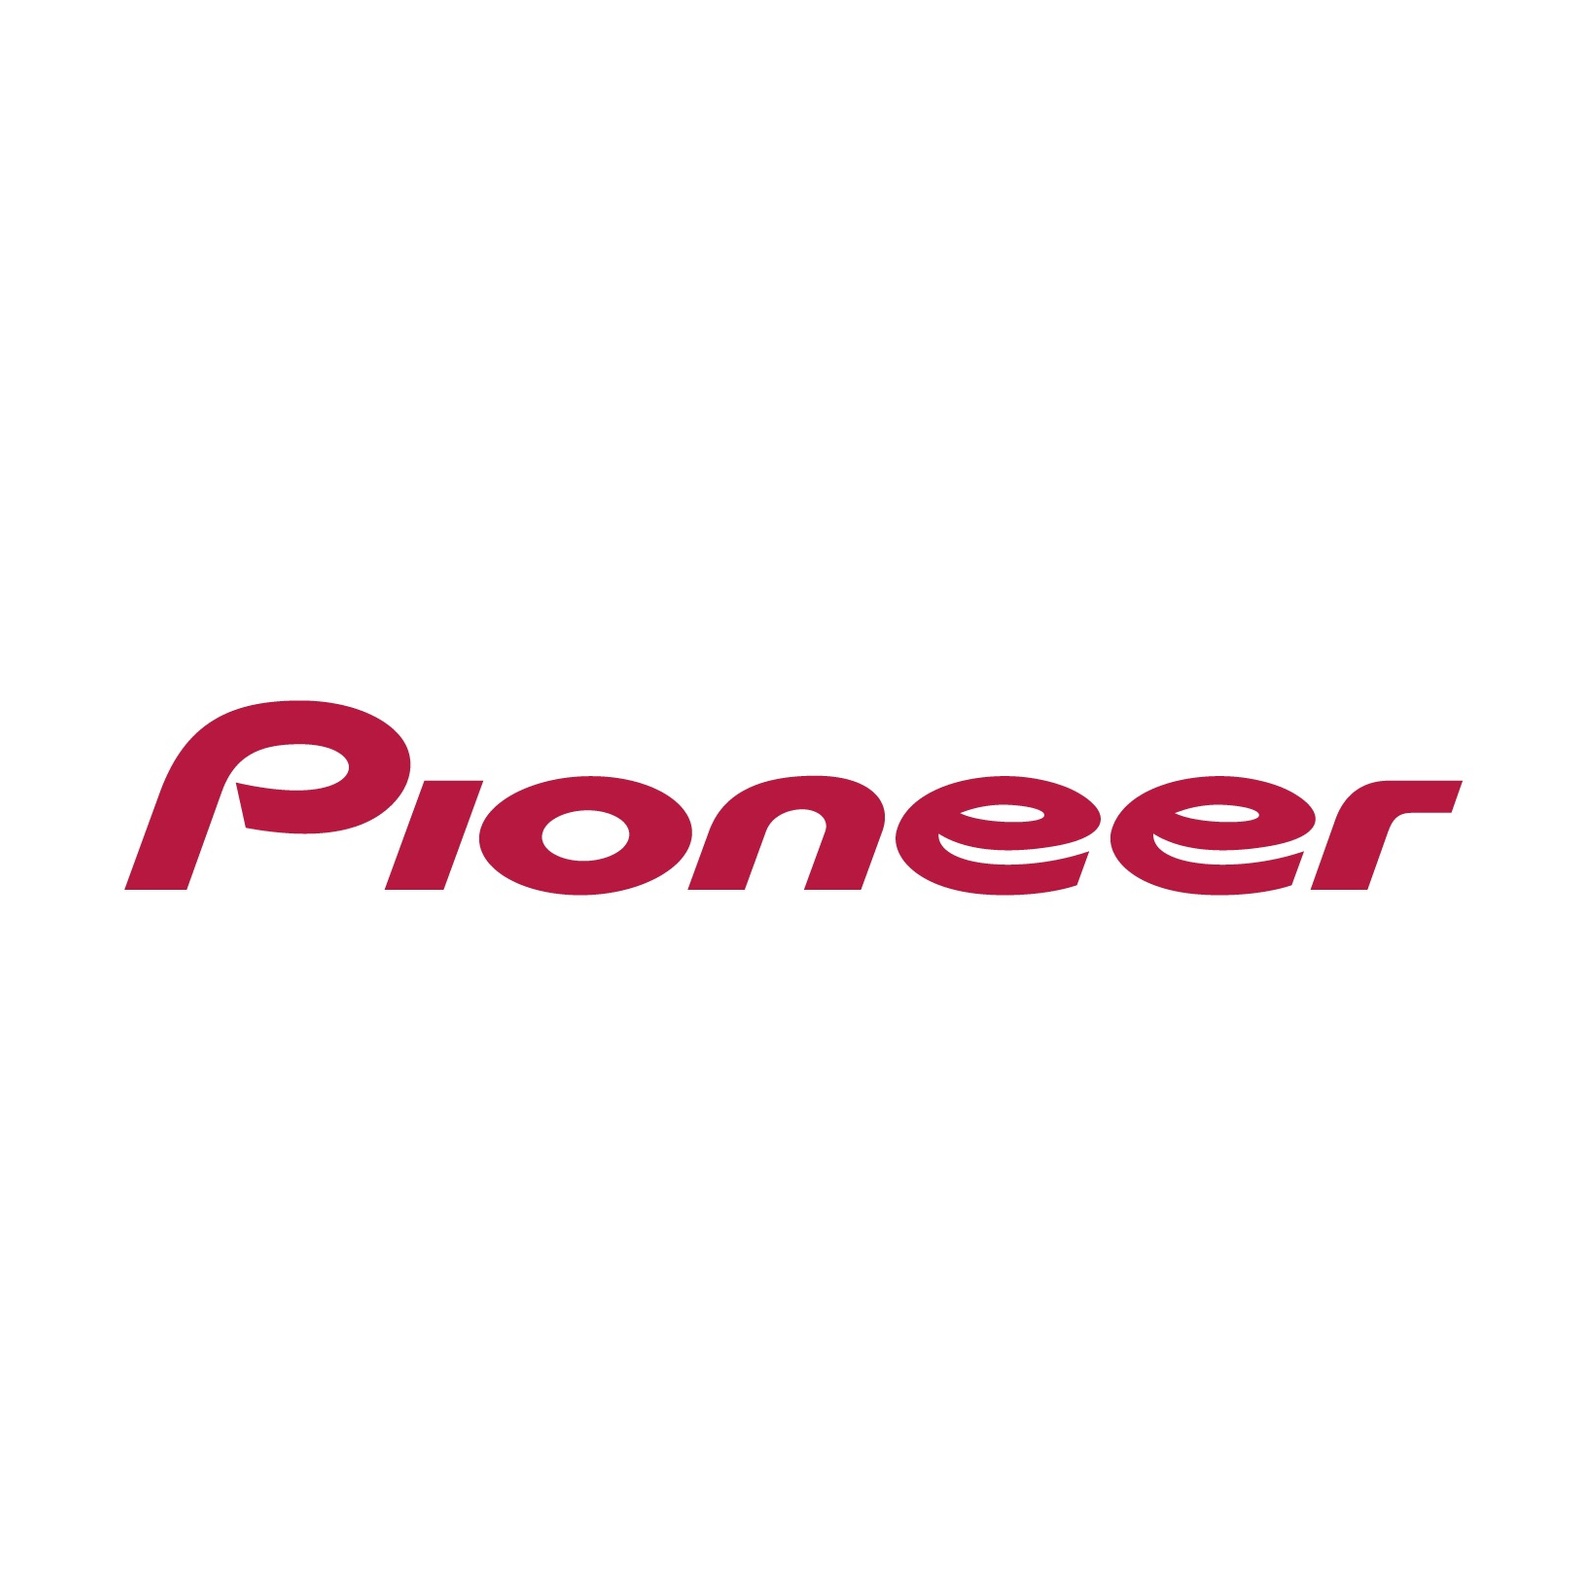 Pioneer (8)